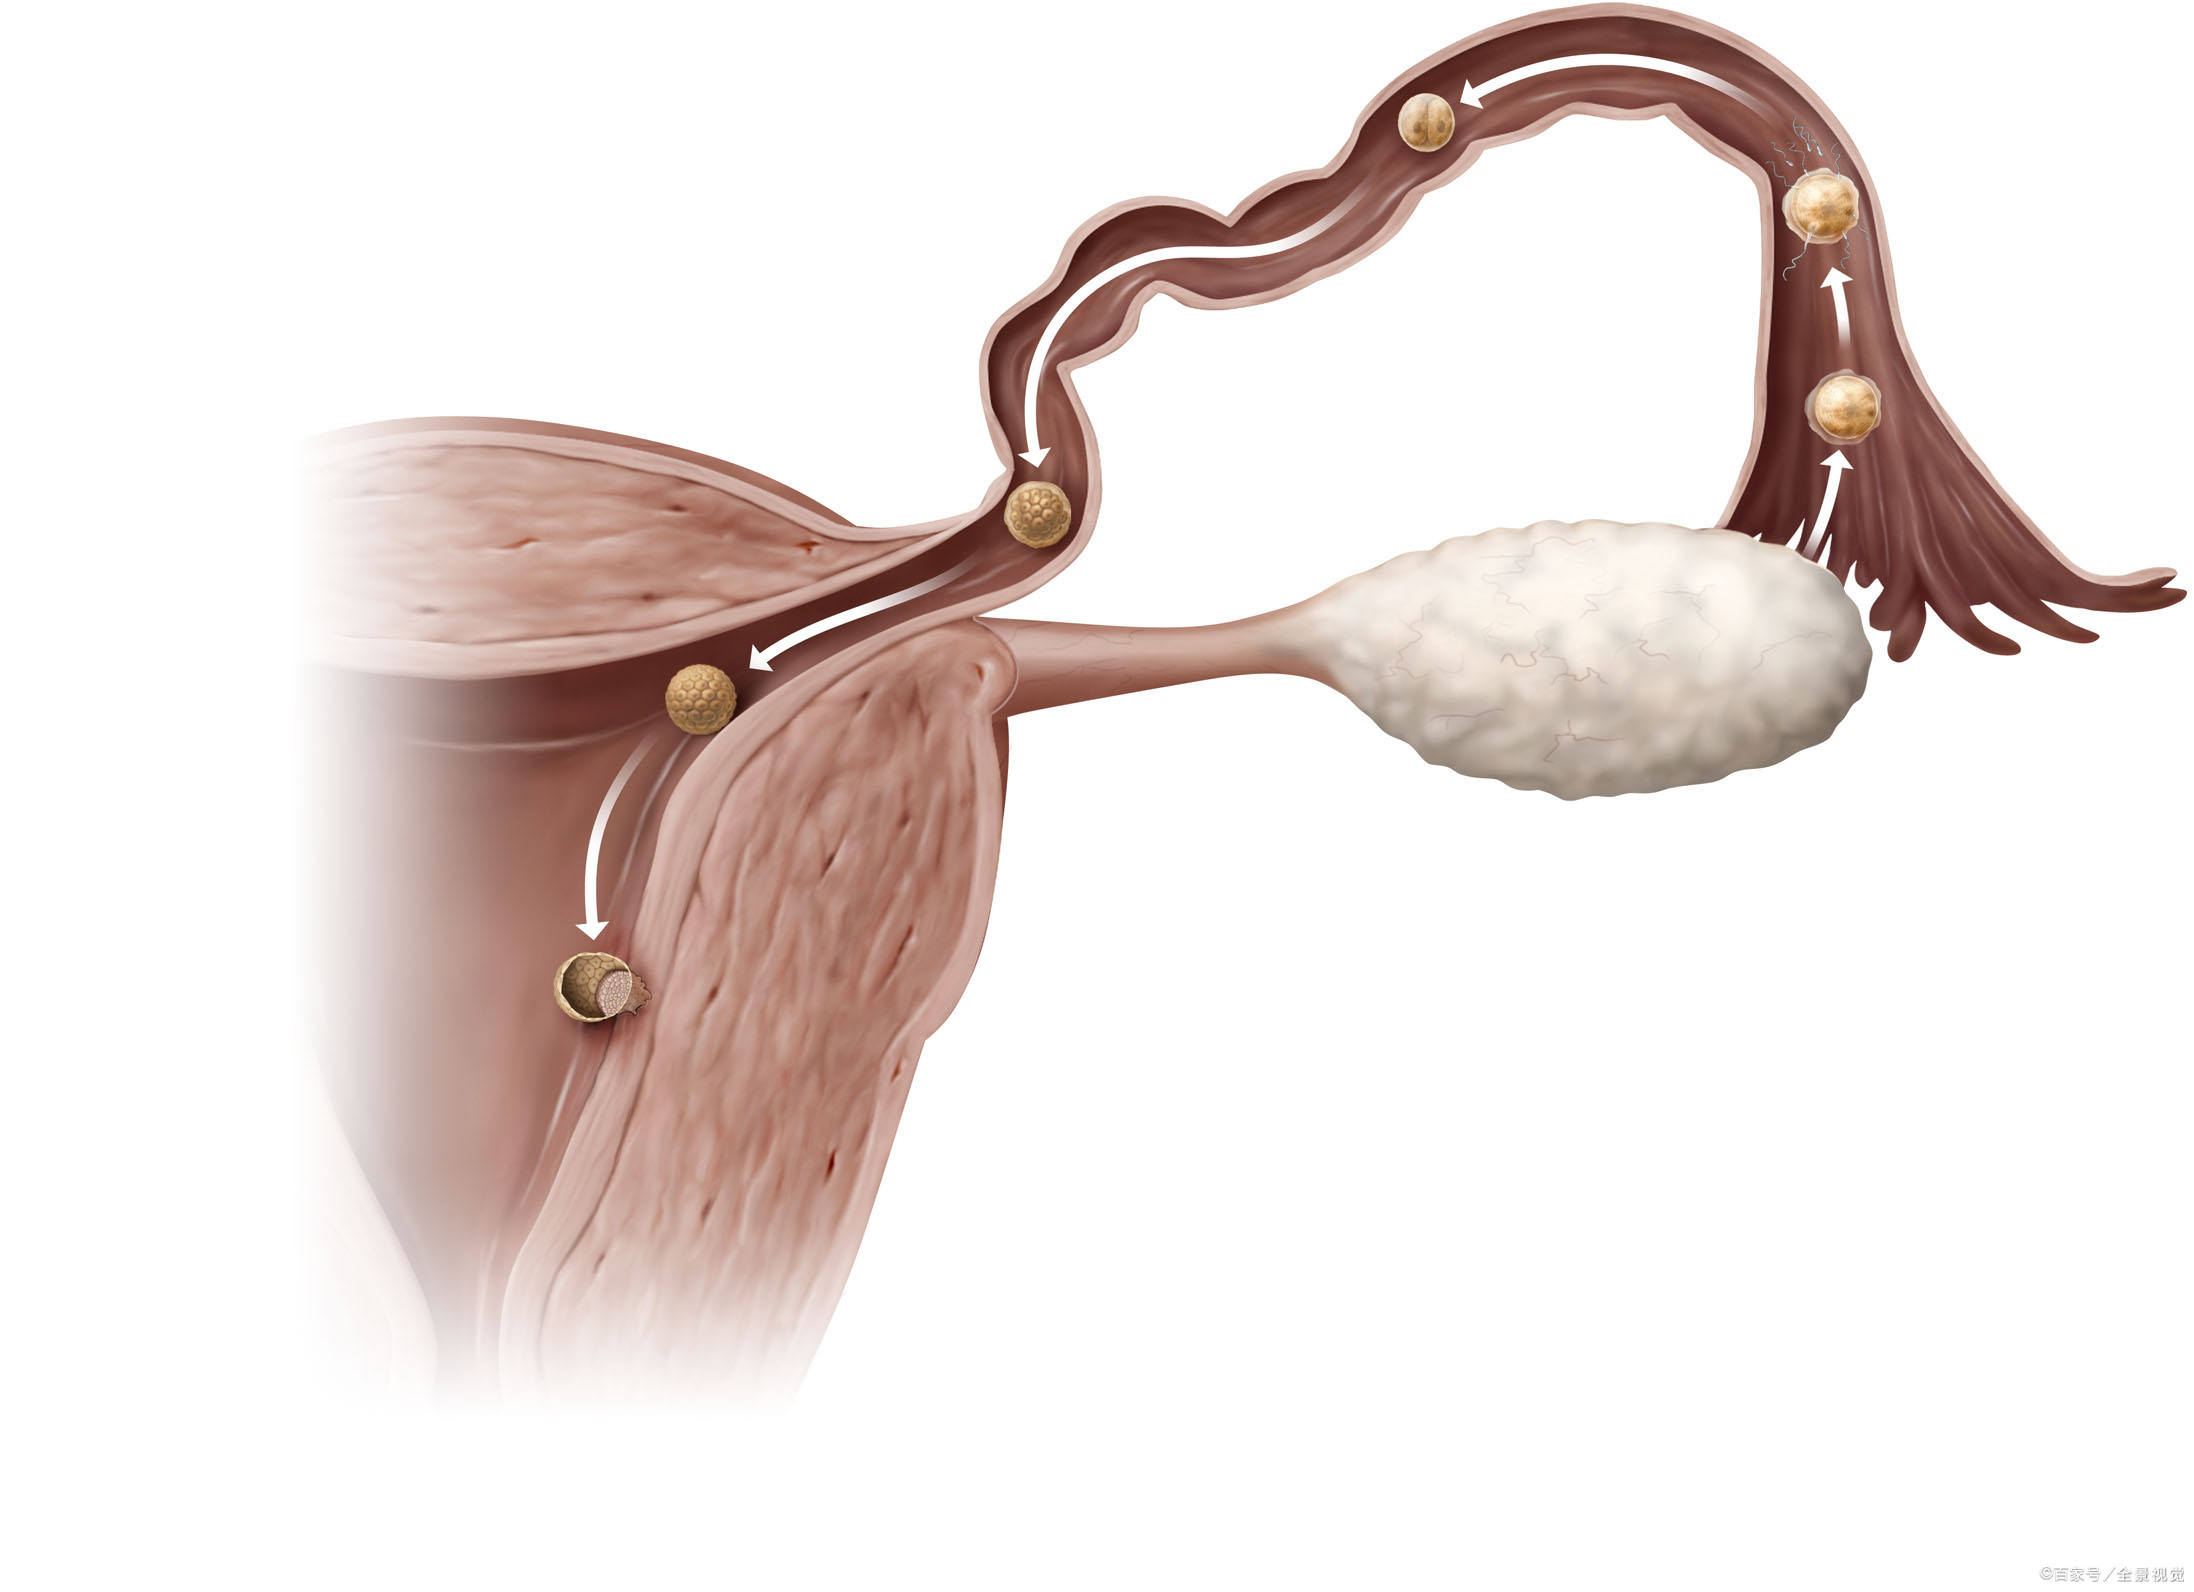 宫腔内囊性结构图片